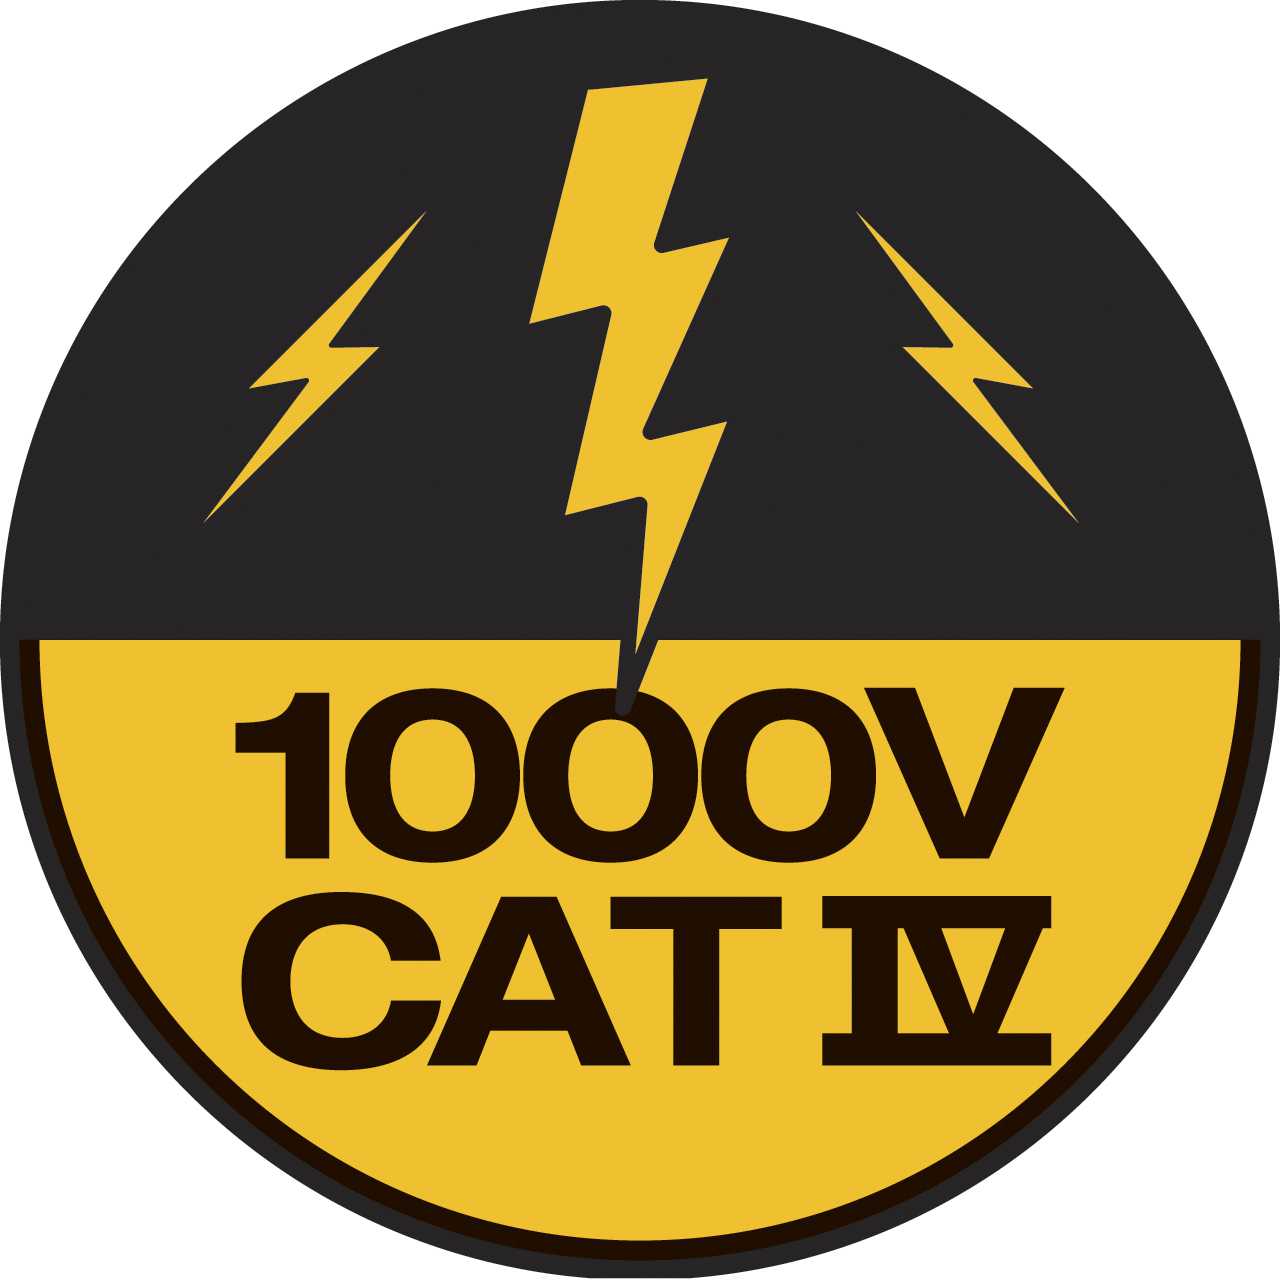 fluke icon catIV 1000v